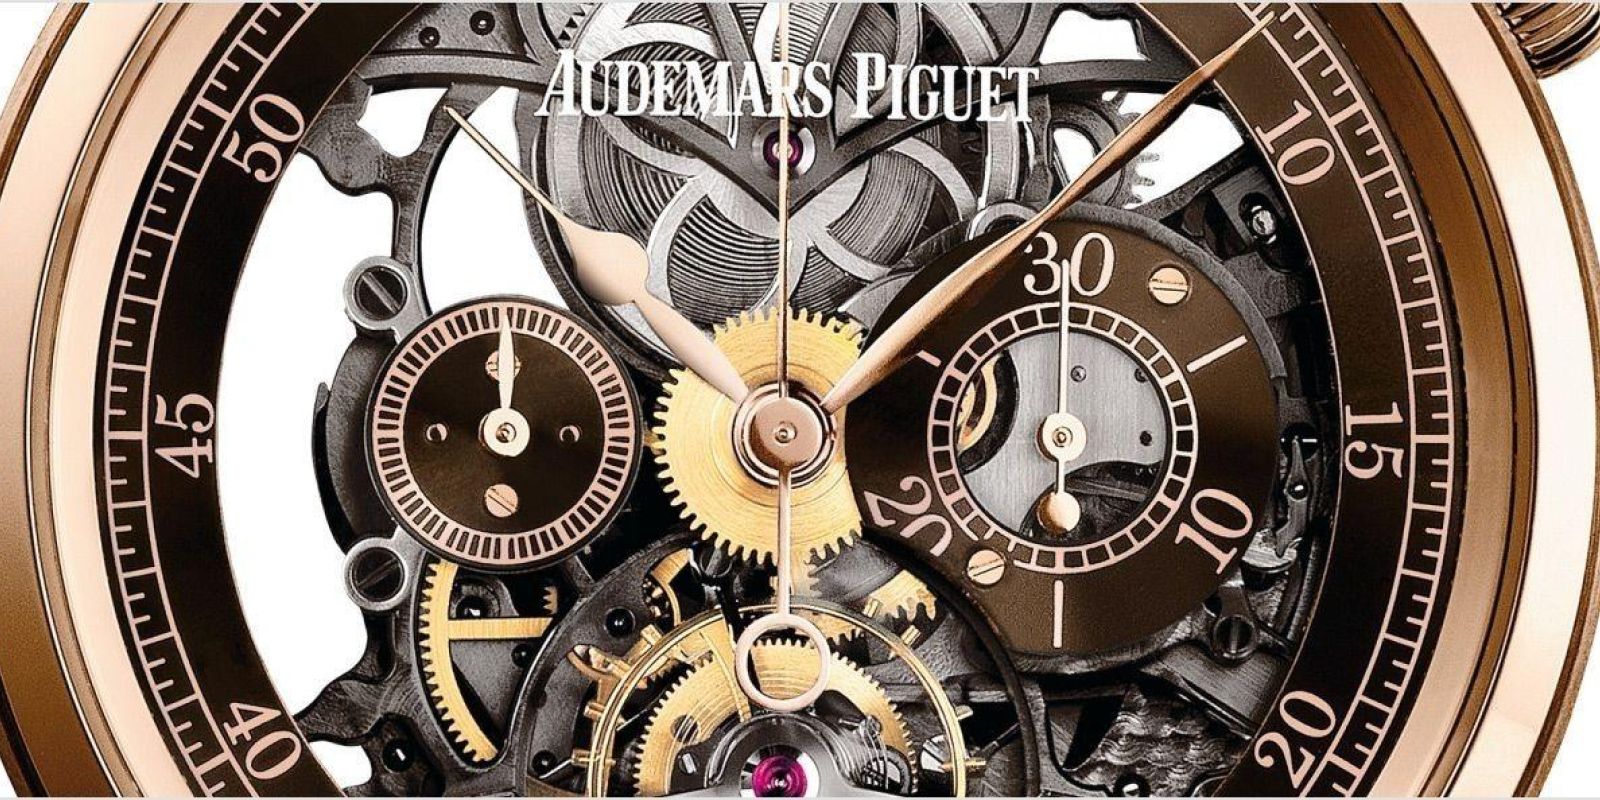 Audemars Piguet Jules Audemars Tourbillon Chronograph